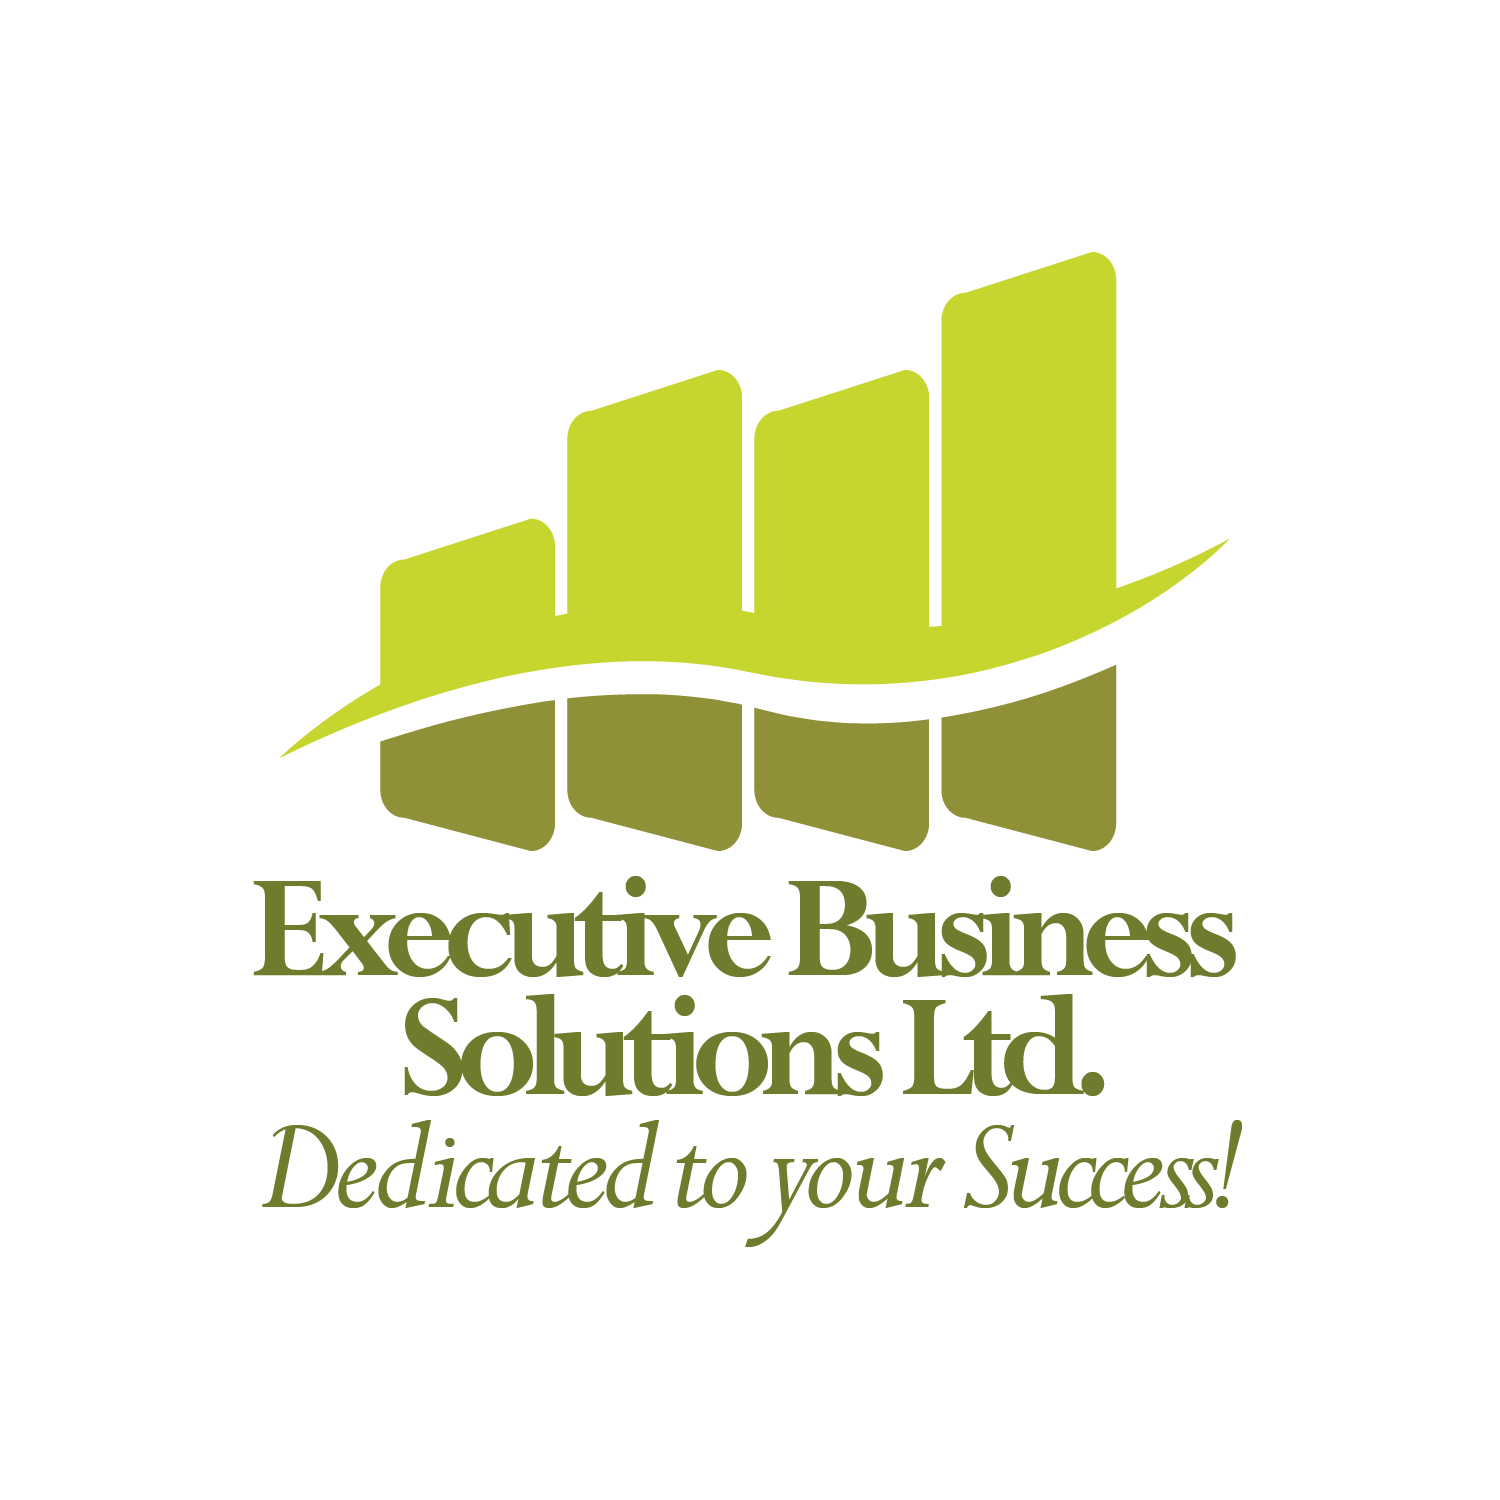 Executive Business